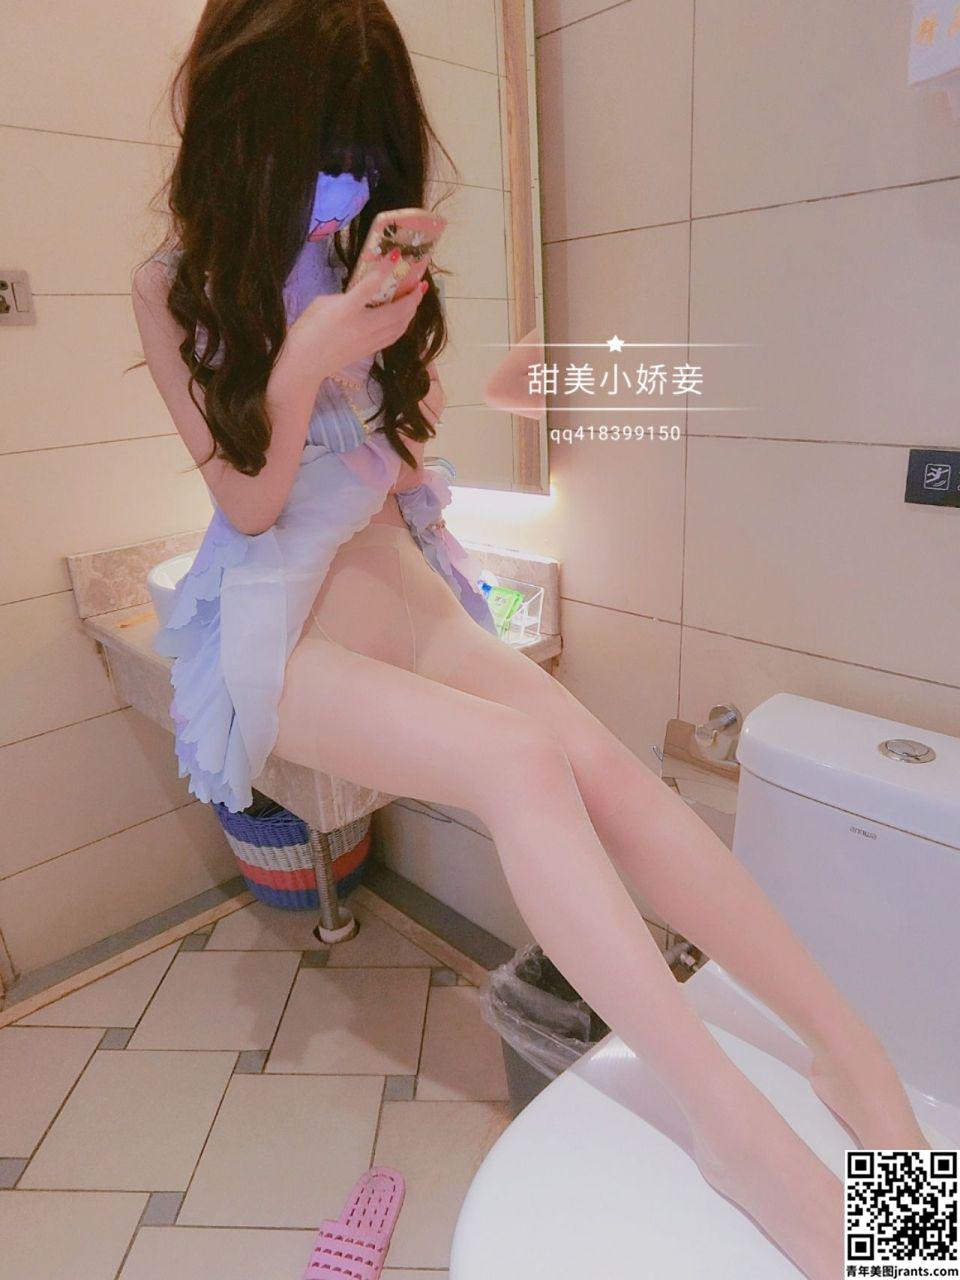 甜美小娇妾 &#8211; Cute loli girl with a mask show her pussy (28P)